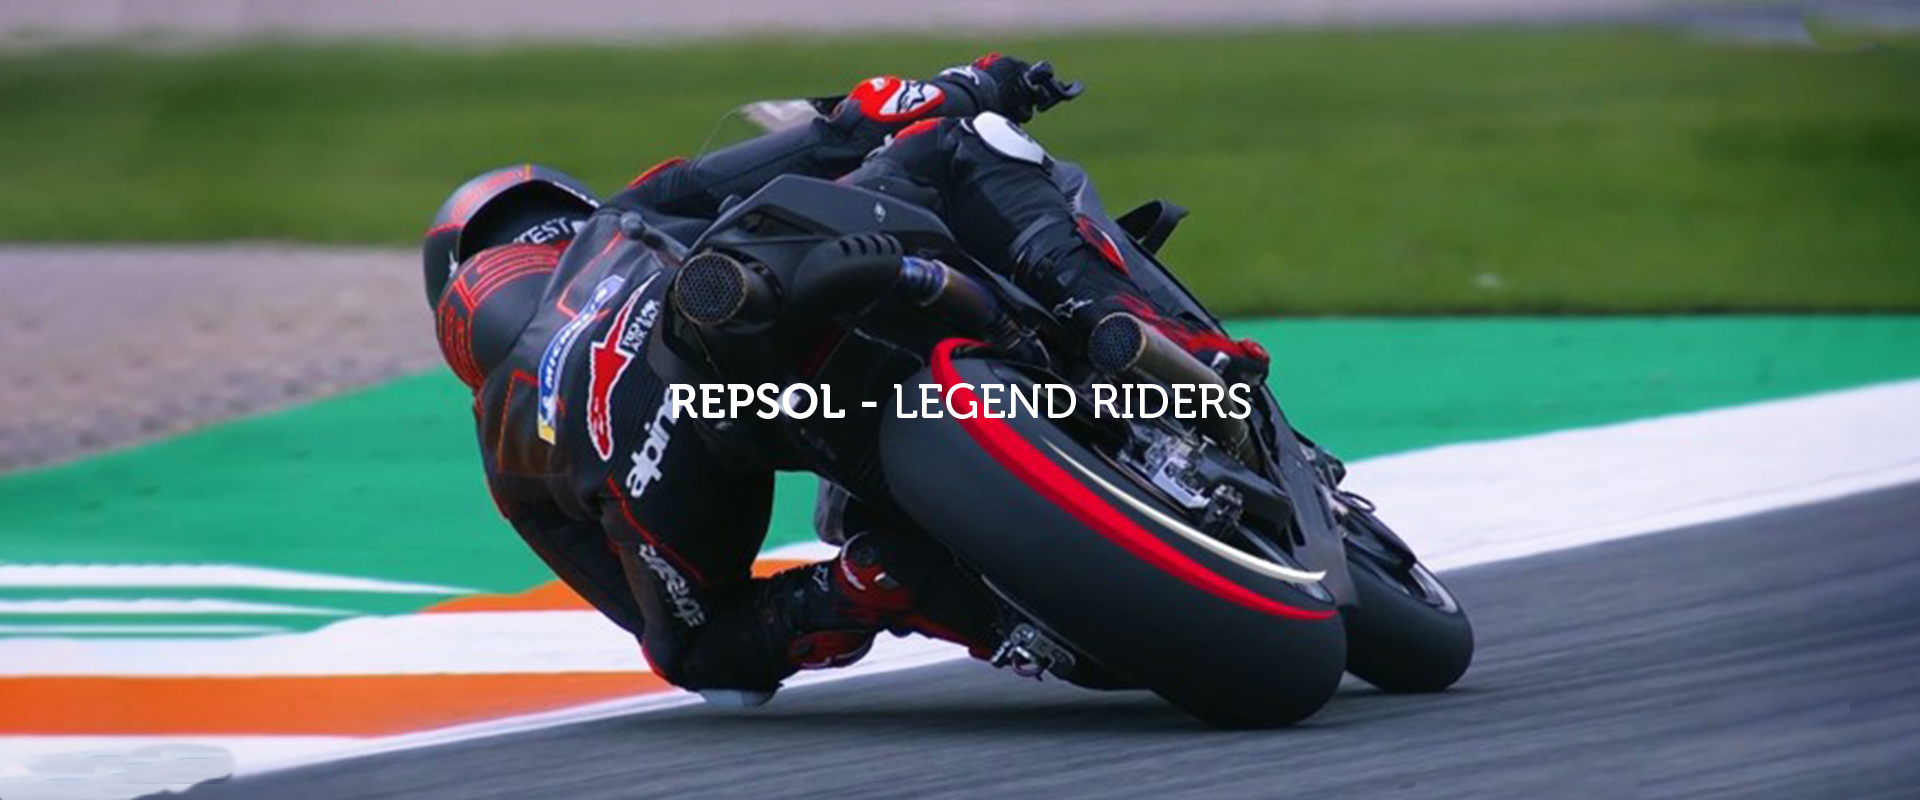 REPSOL Legend Riders